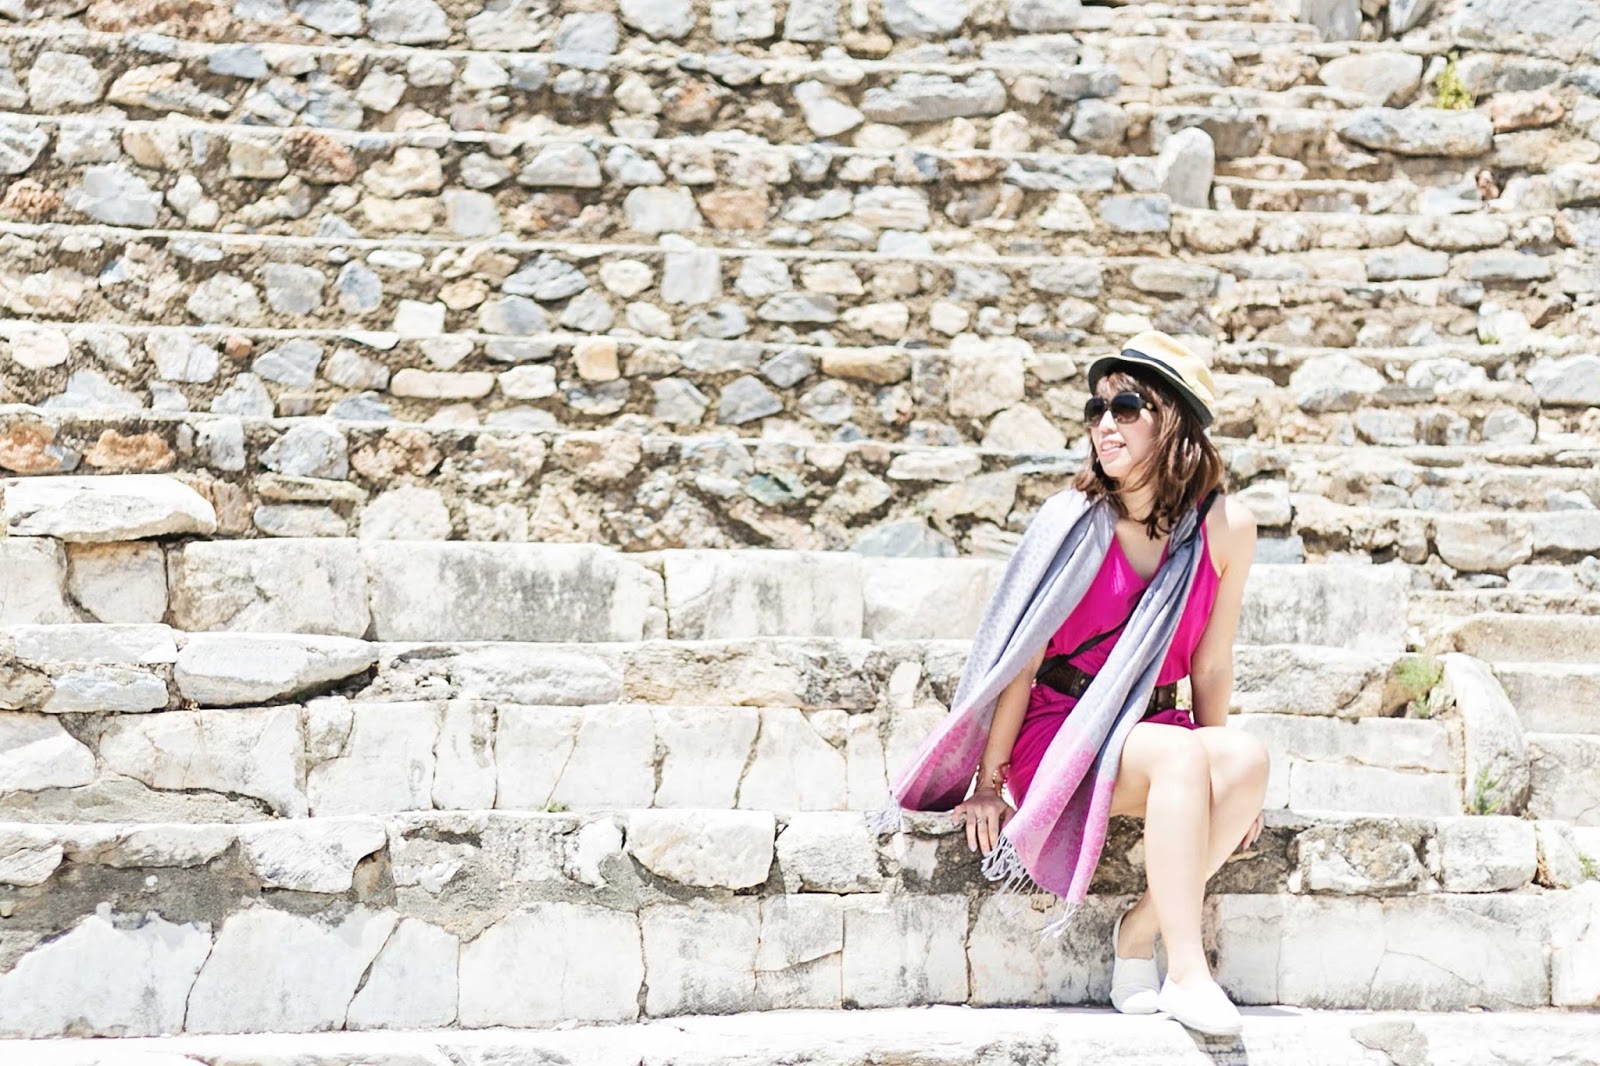 Ephesus, Turkey - Celebrity Cruise Vacation